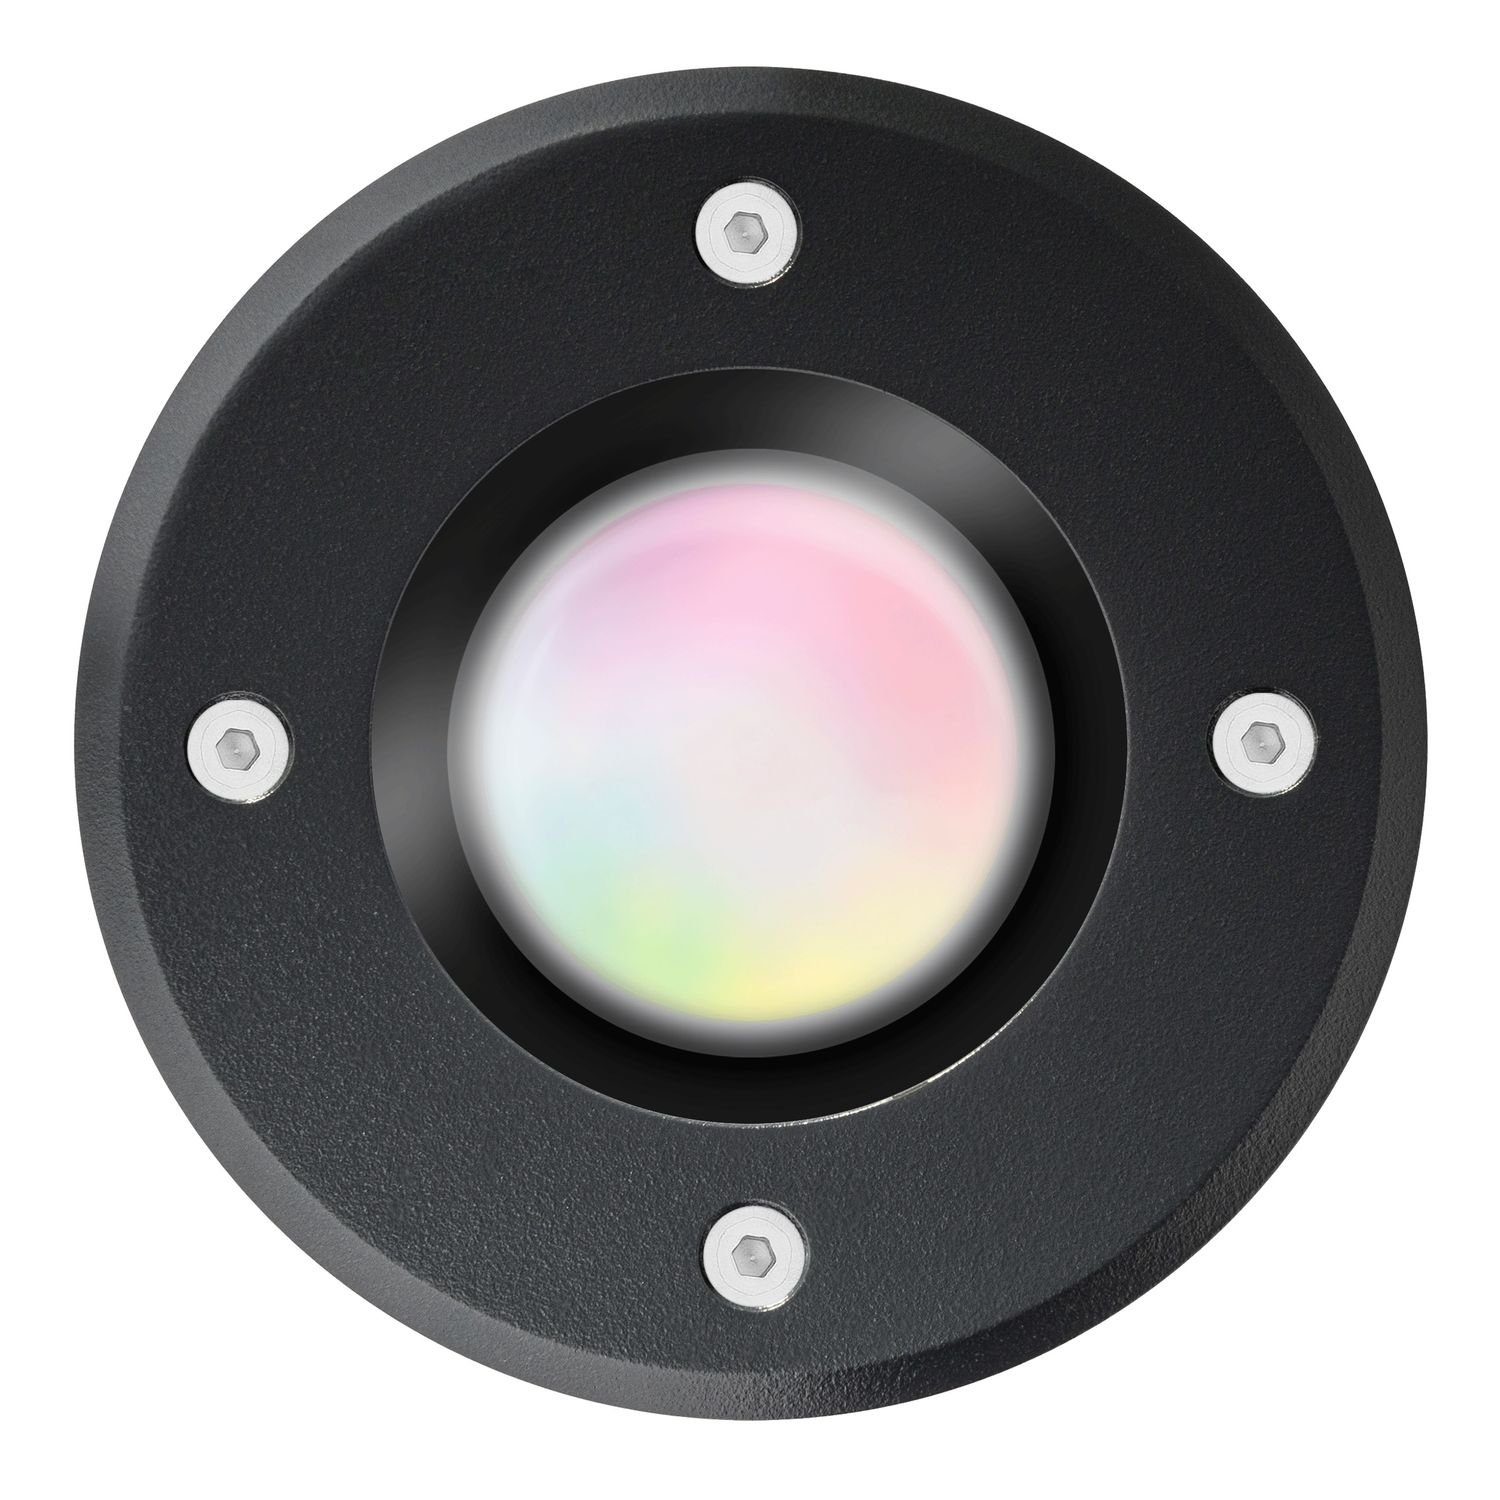 per + - 5W RGB LED steuerbar Einbaustrahler LEDANDO Smart LED Set App - WiFi Bodeneinbaustrahler